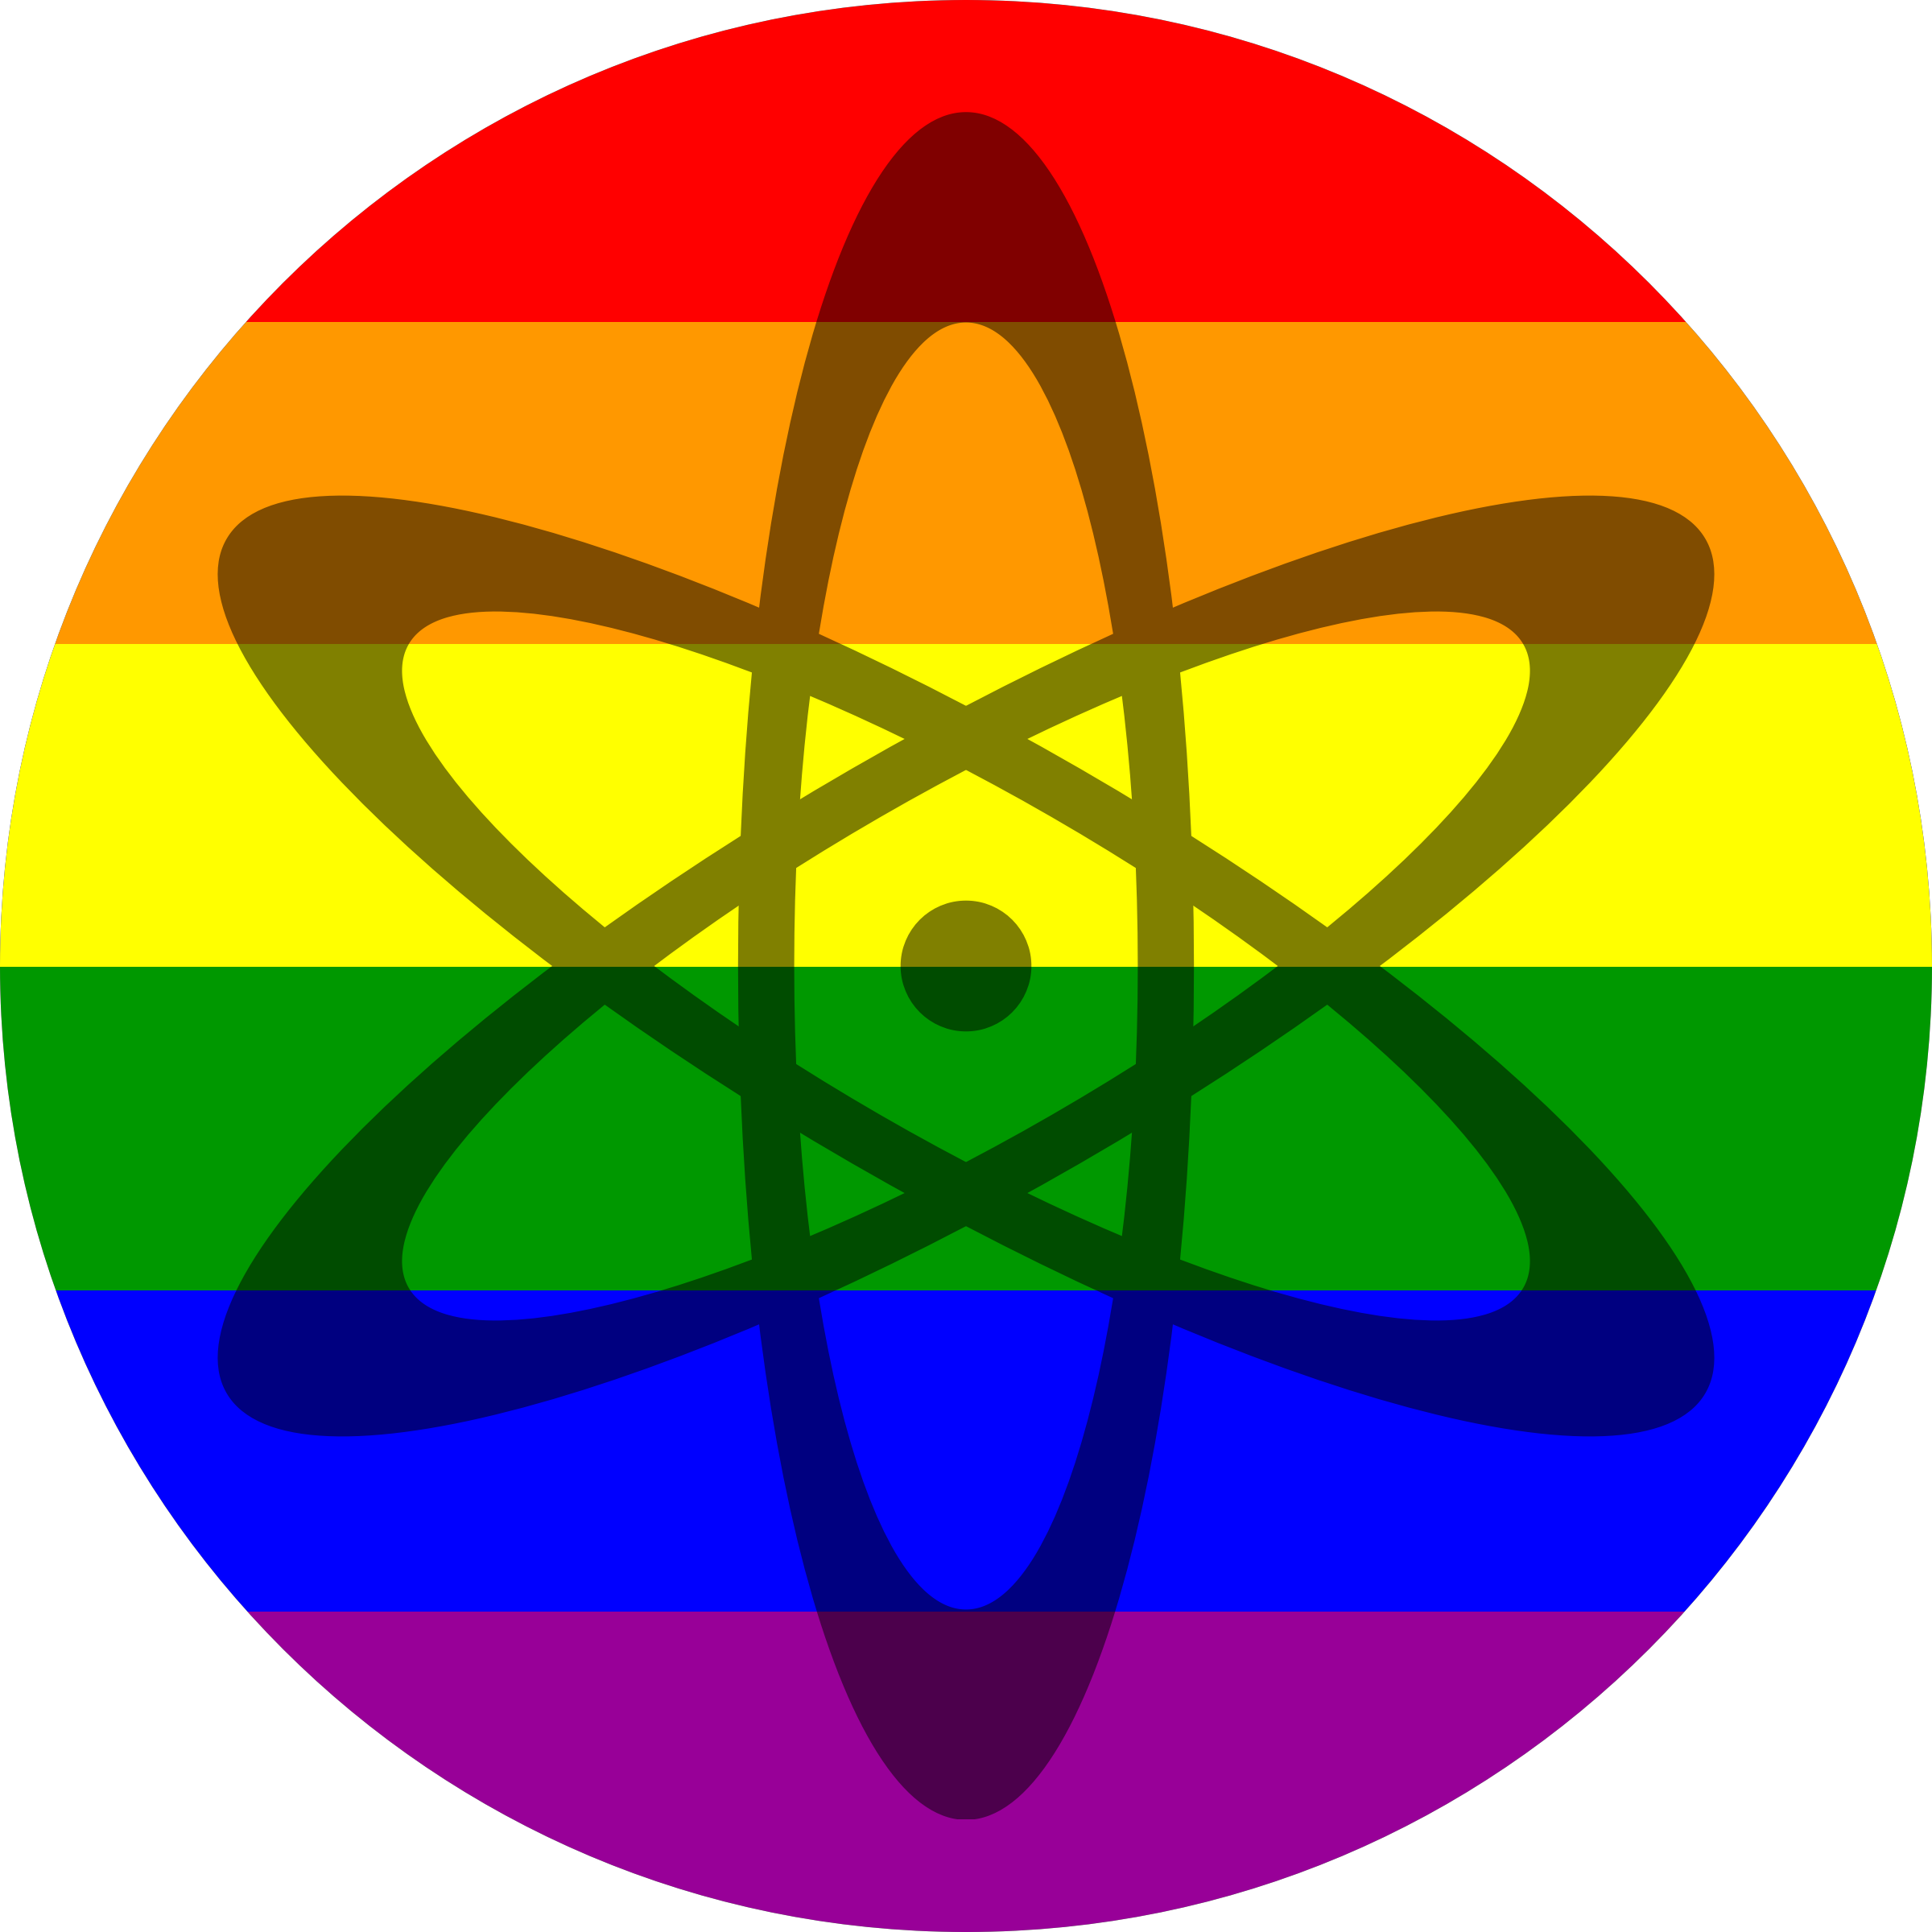 Atom shadow on flag. Life clipart rainbow